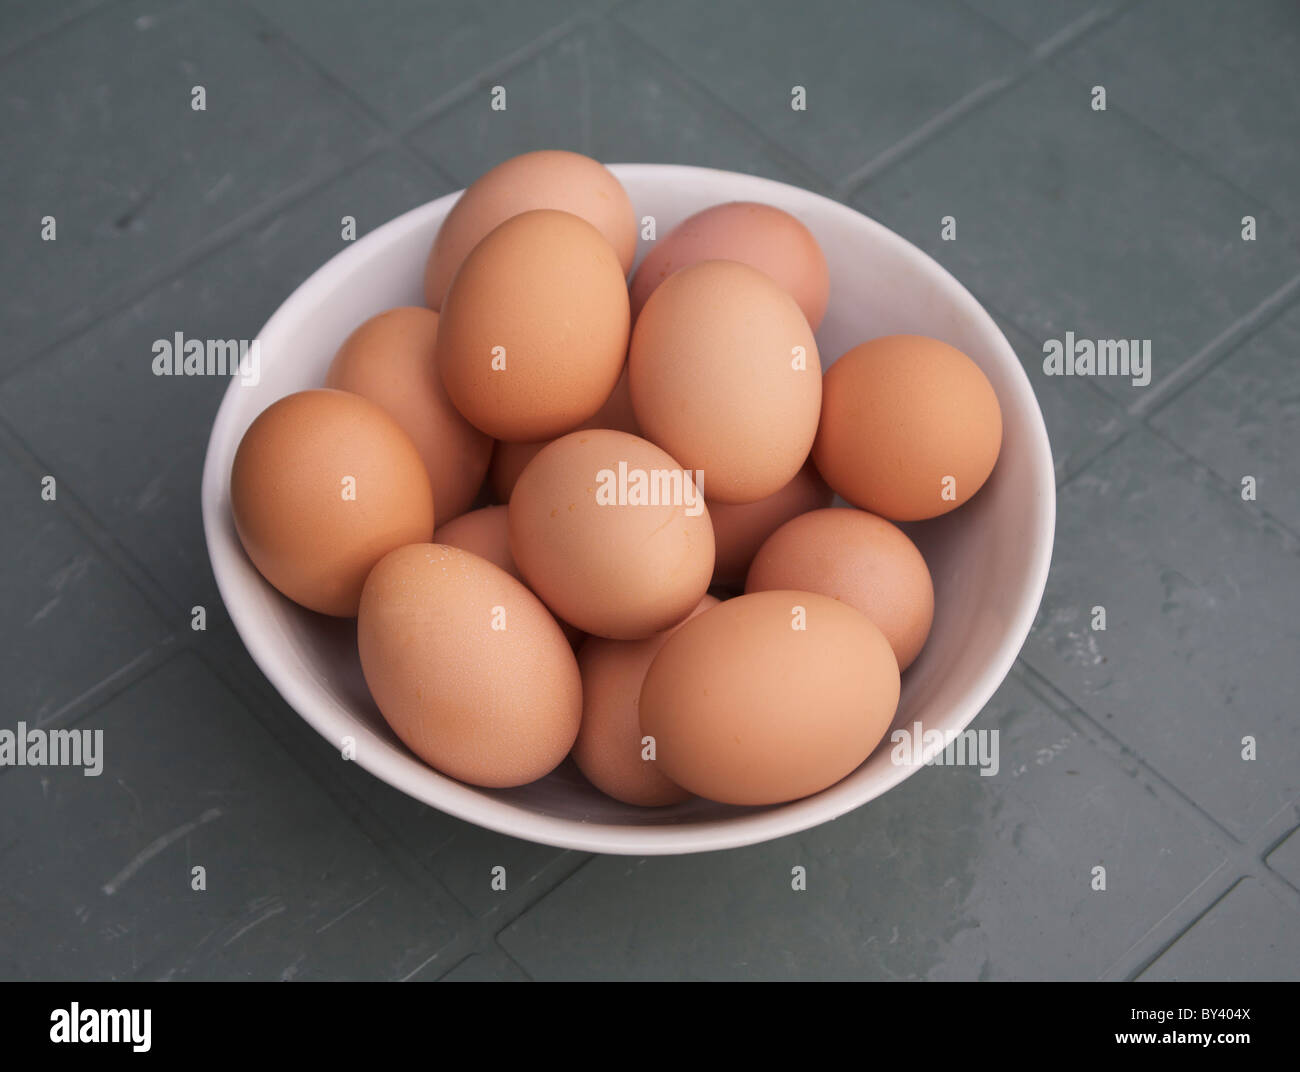 Free range eggs Stock Photo